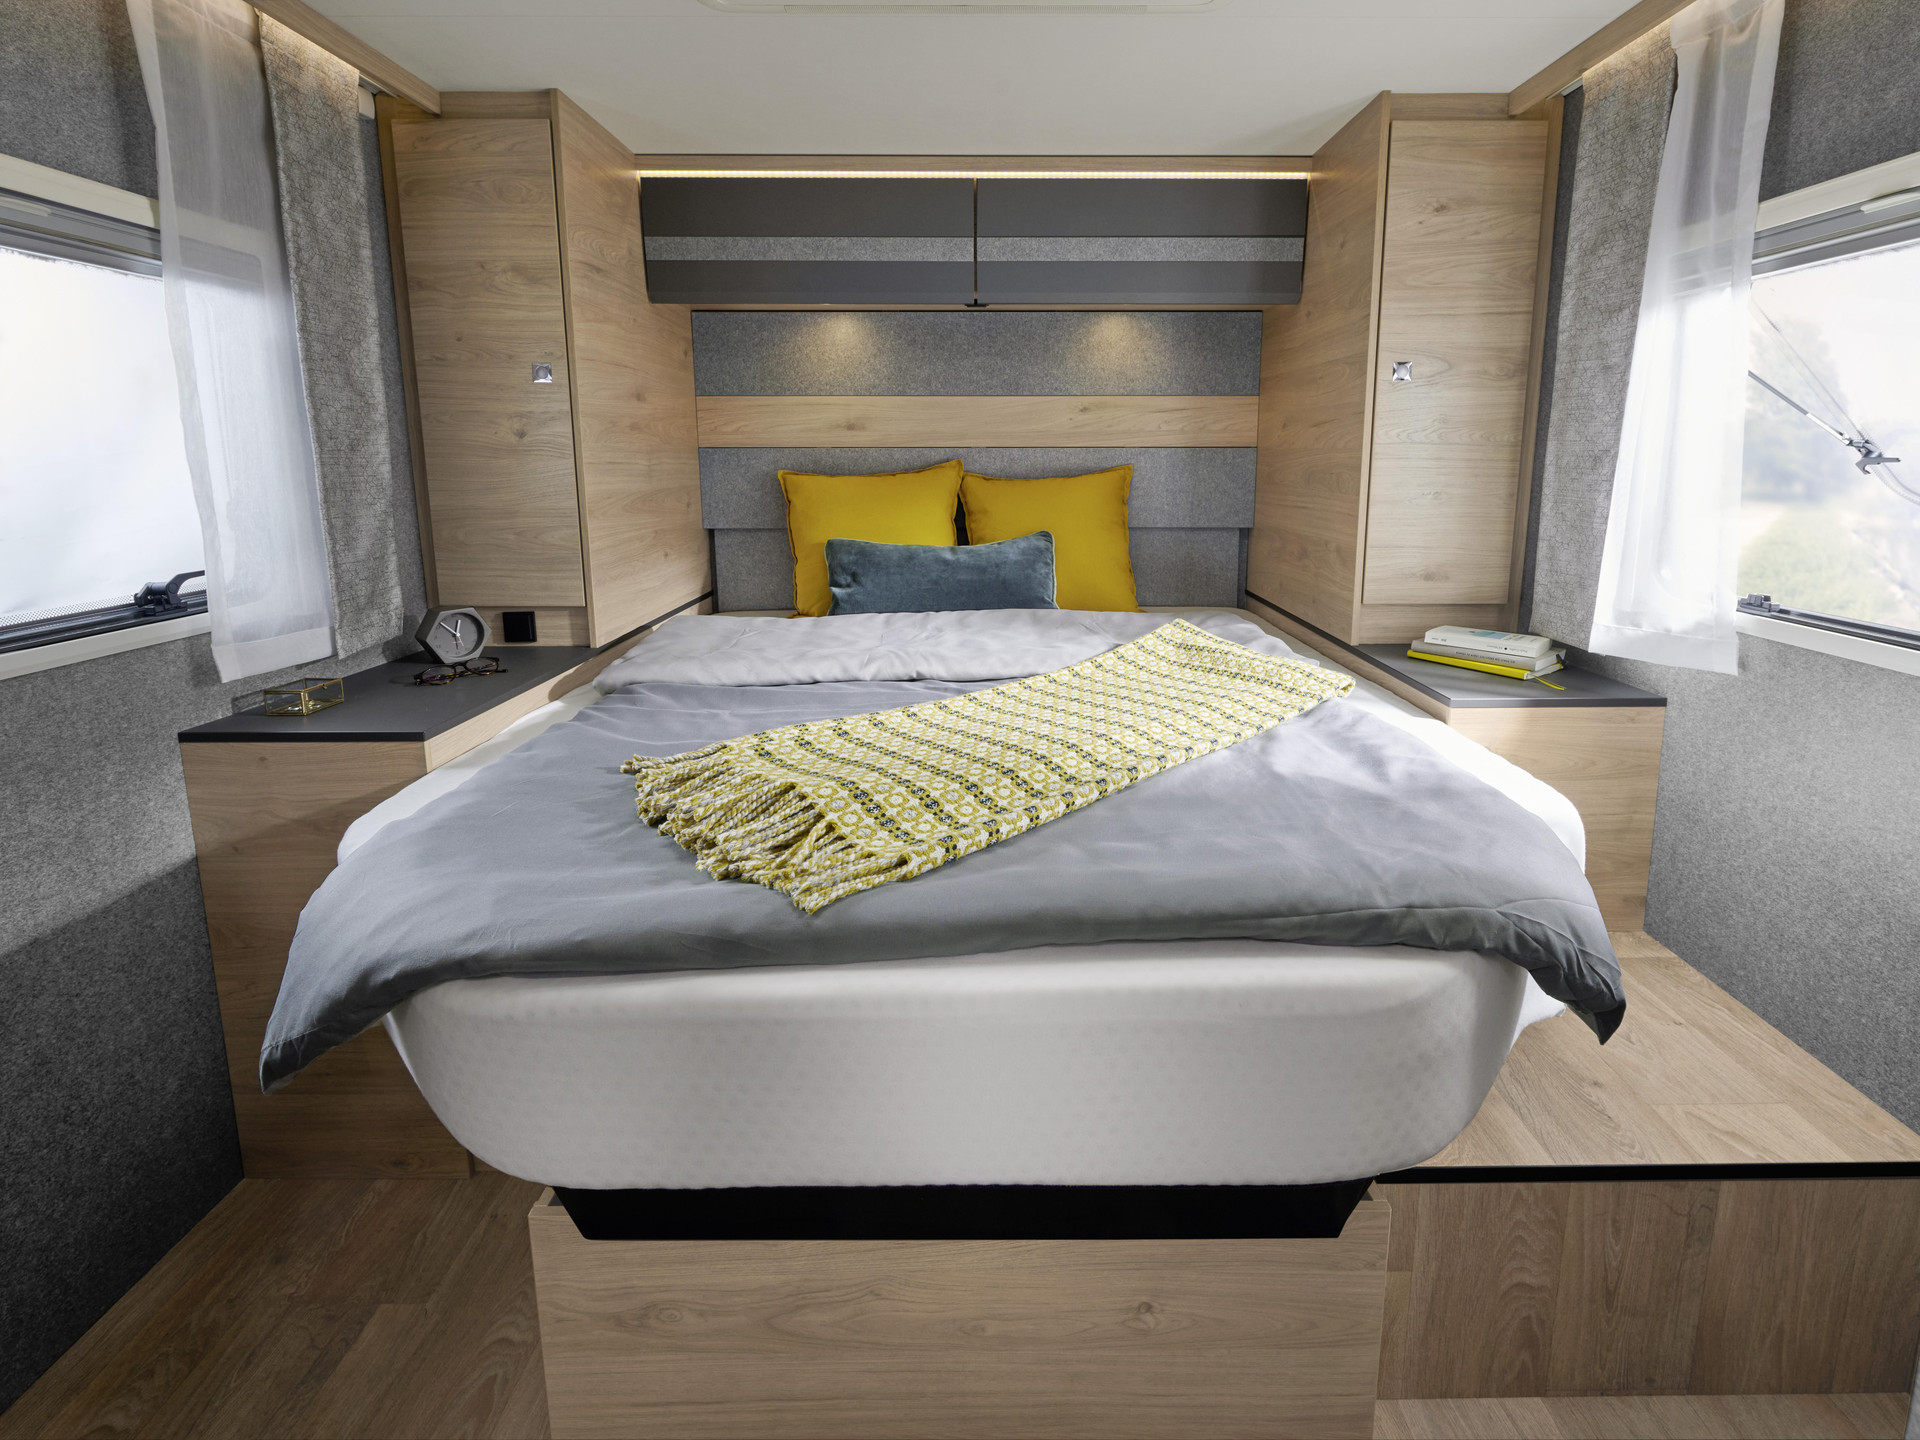 Le grand lit central 190 x 150 cm est réglable en hauteur de série. Préférez-vous plus d’espace dans la soute garage ou bien une hauteur sous pavillon supplémentaire dans l’espace nuit ? Vous pourrez faire votre choix en fonction du chargement.